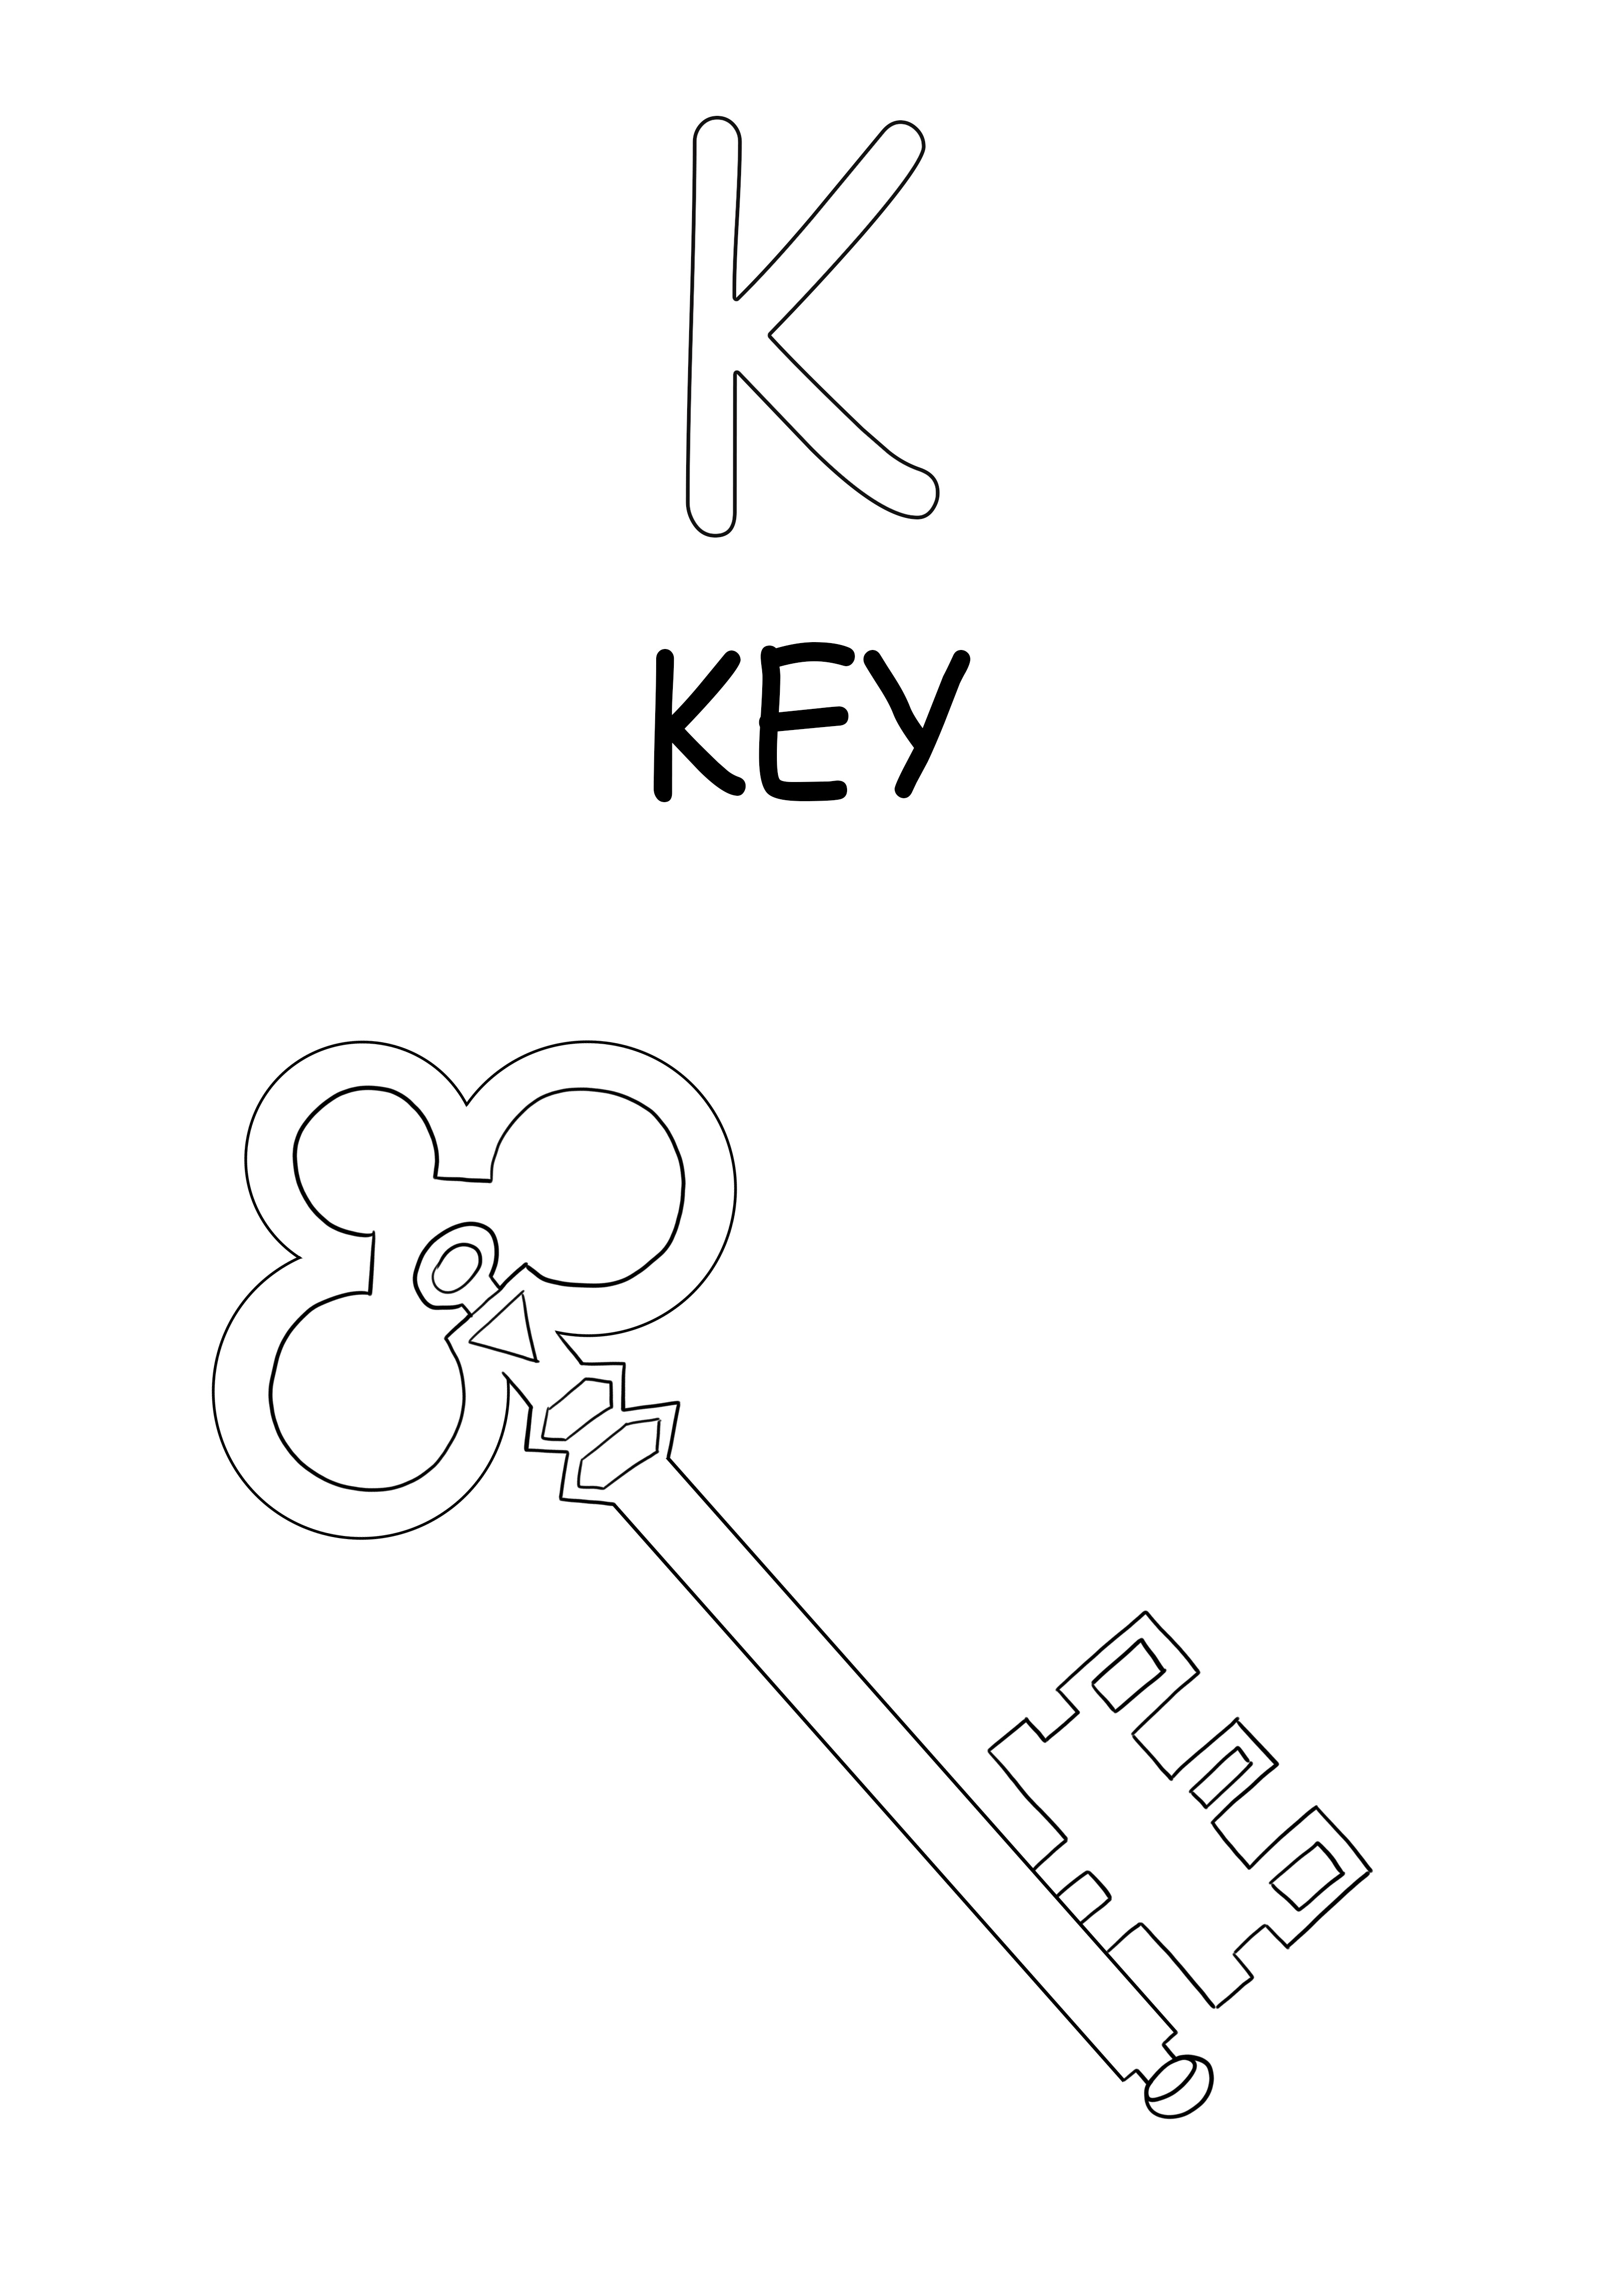 Büyük harf K, anahtar renklendirme ve ücretsiz baskı resmi içindir